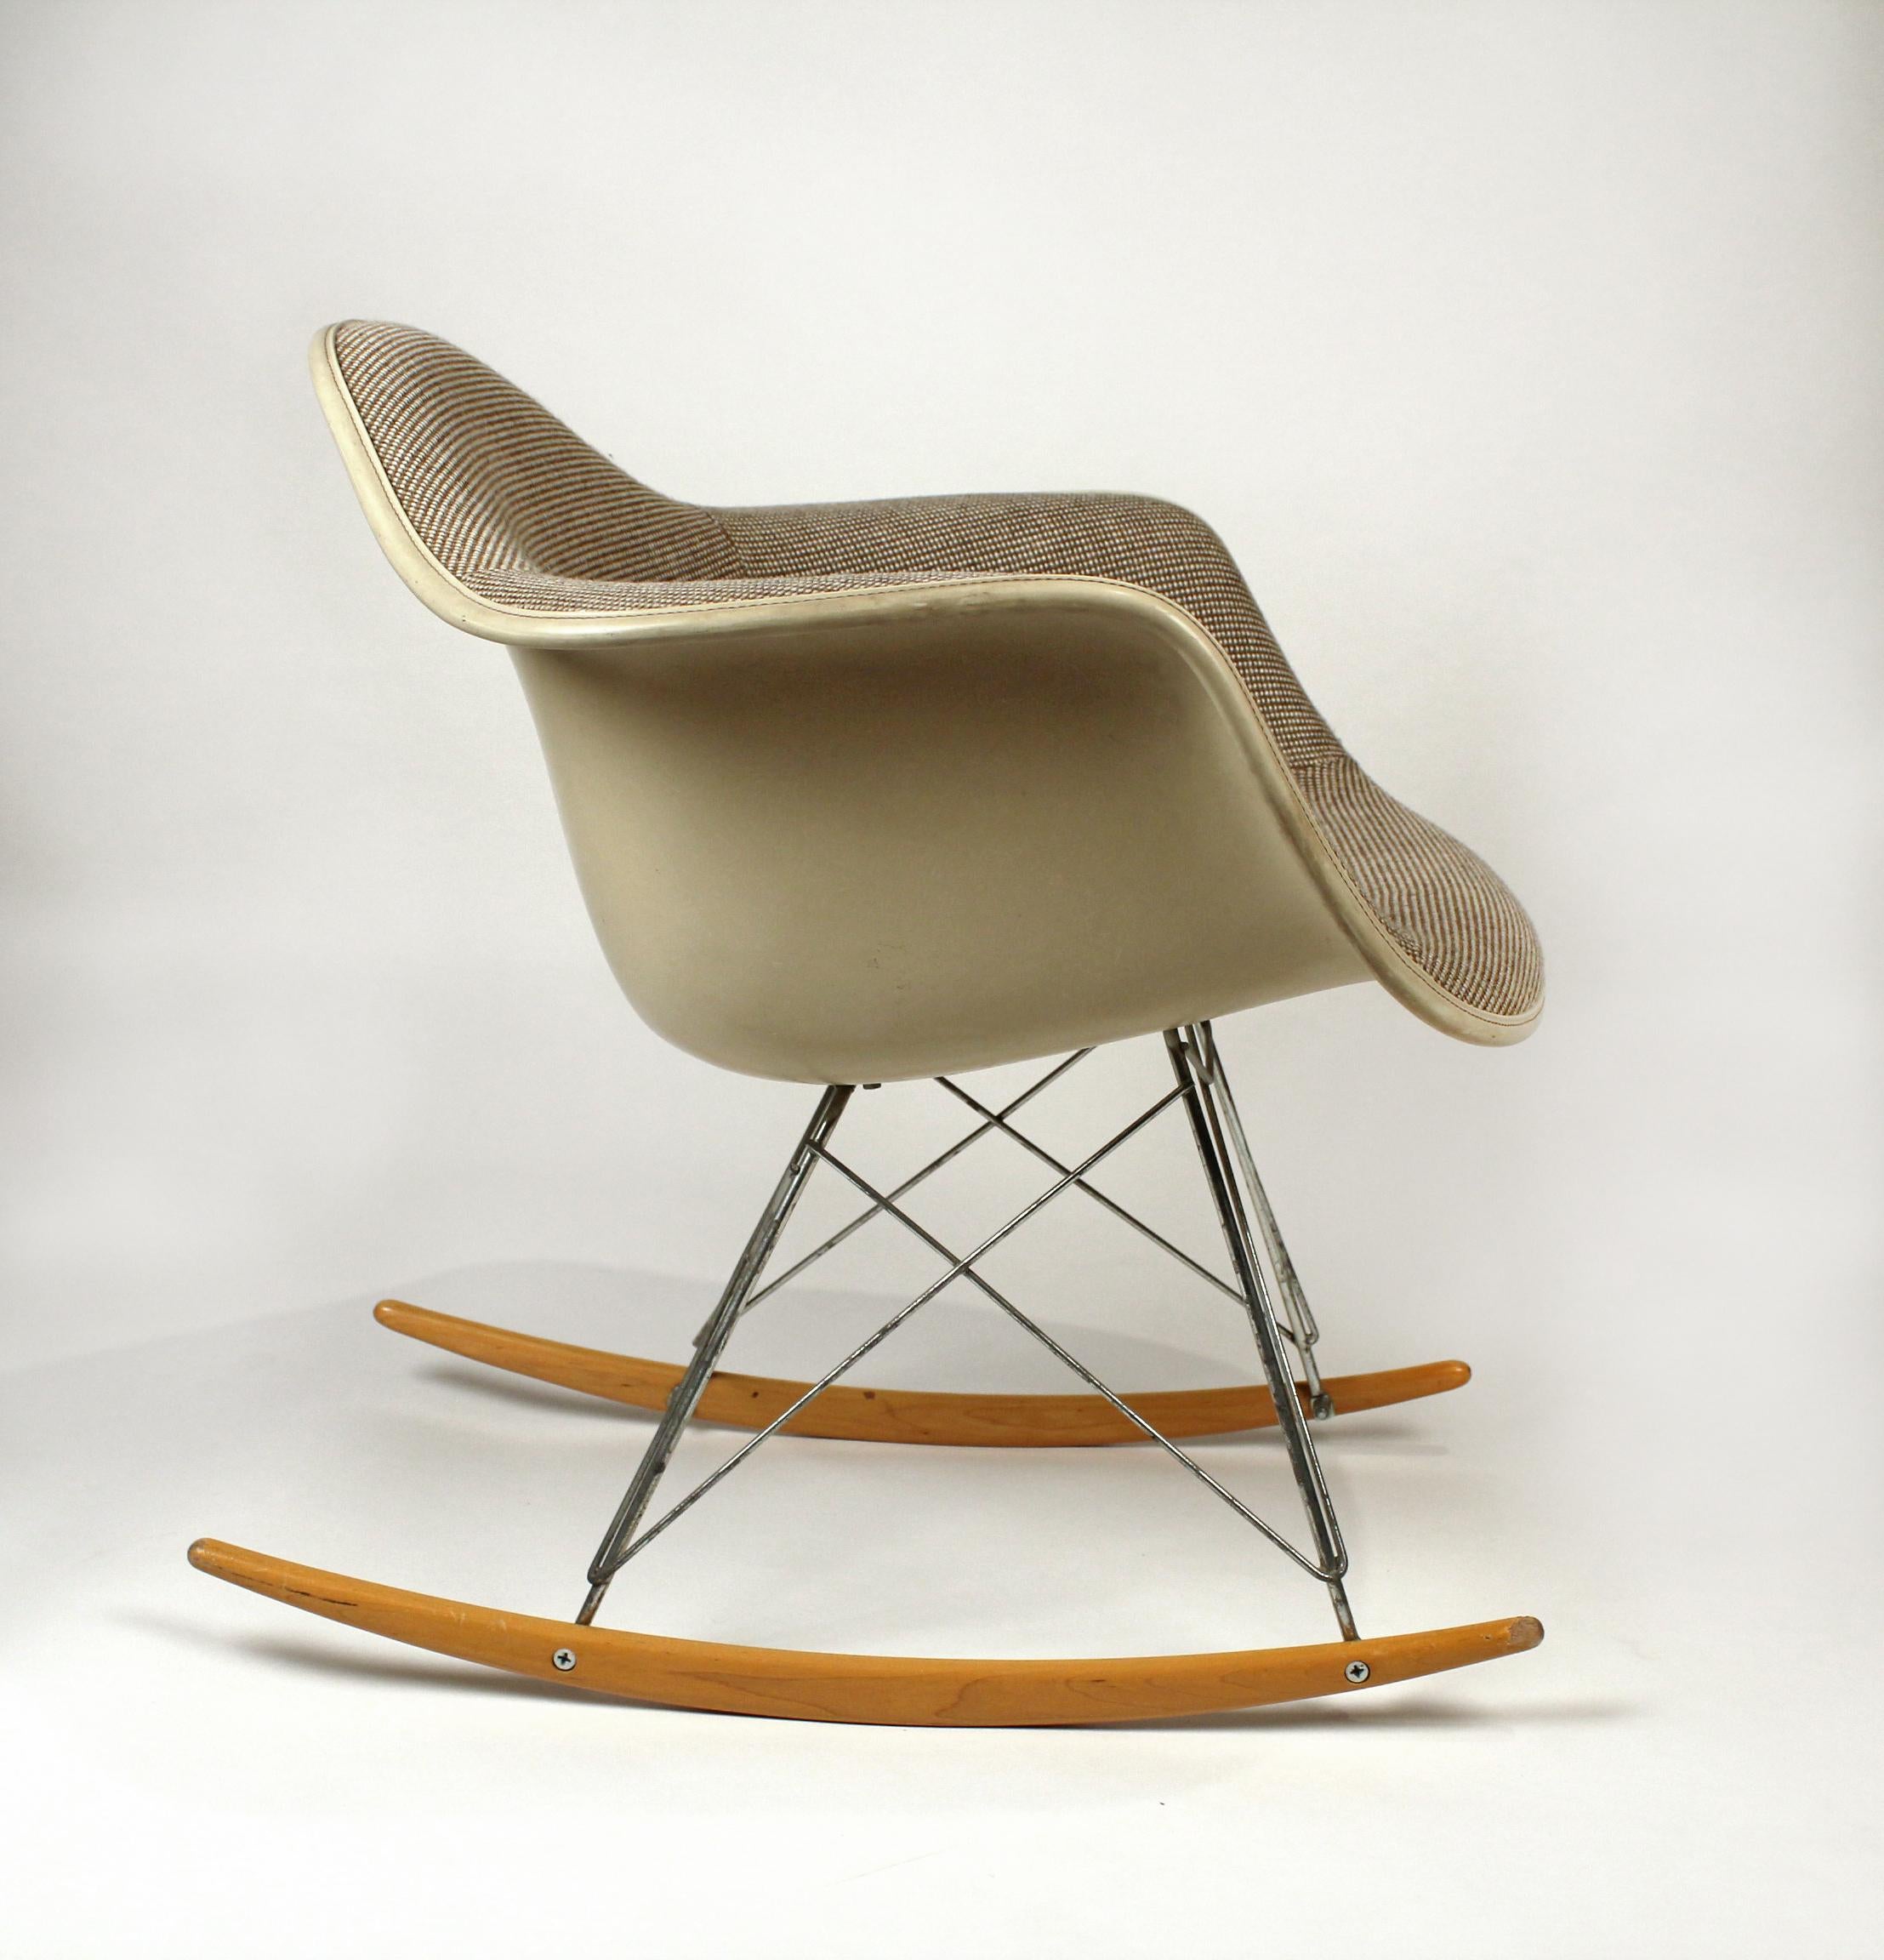 Paire de rocking-chairs assortis, conçus par Charles Eames pour Herman Miller. Les chaises ont la tapisserie originale Alexander Girard - excellent état d'origine avec les bases originales en zinc et les bascules en bouleau.